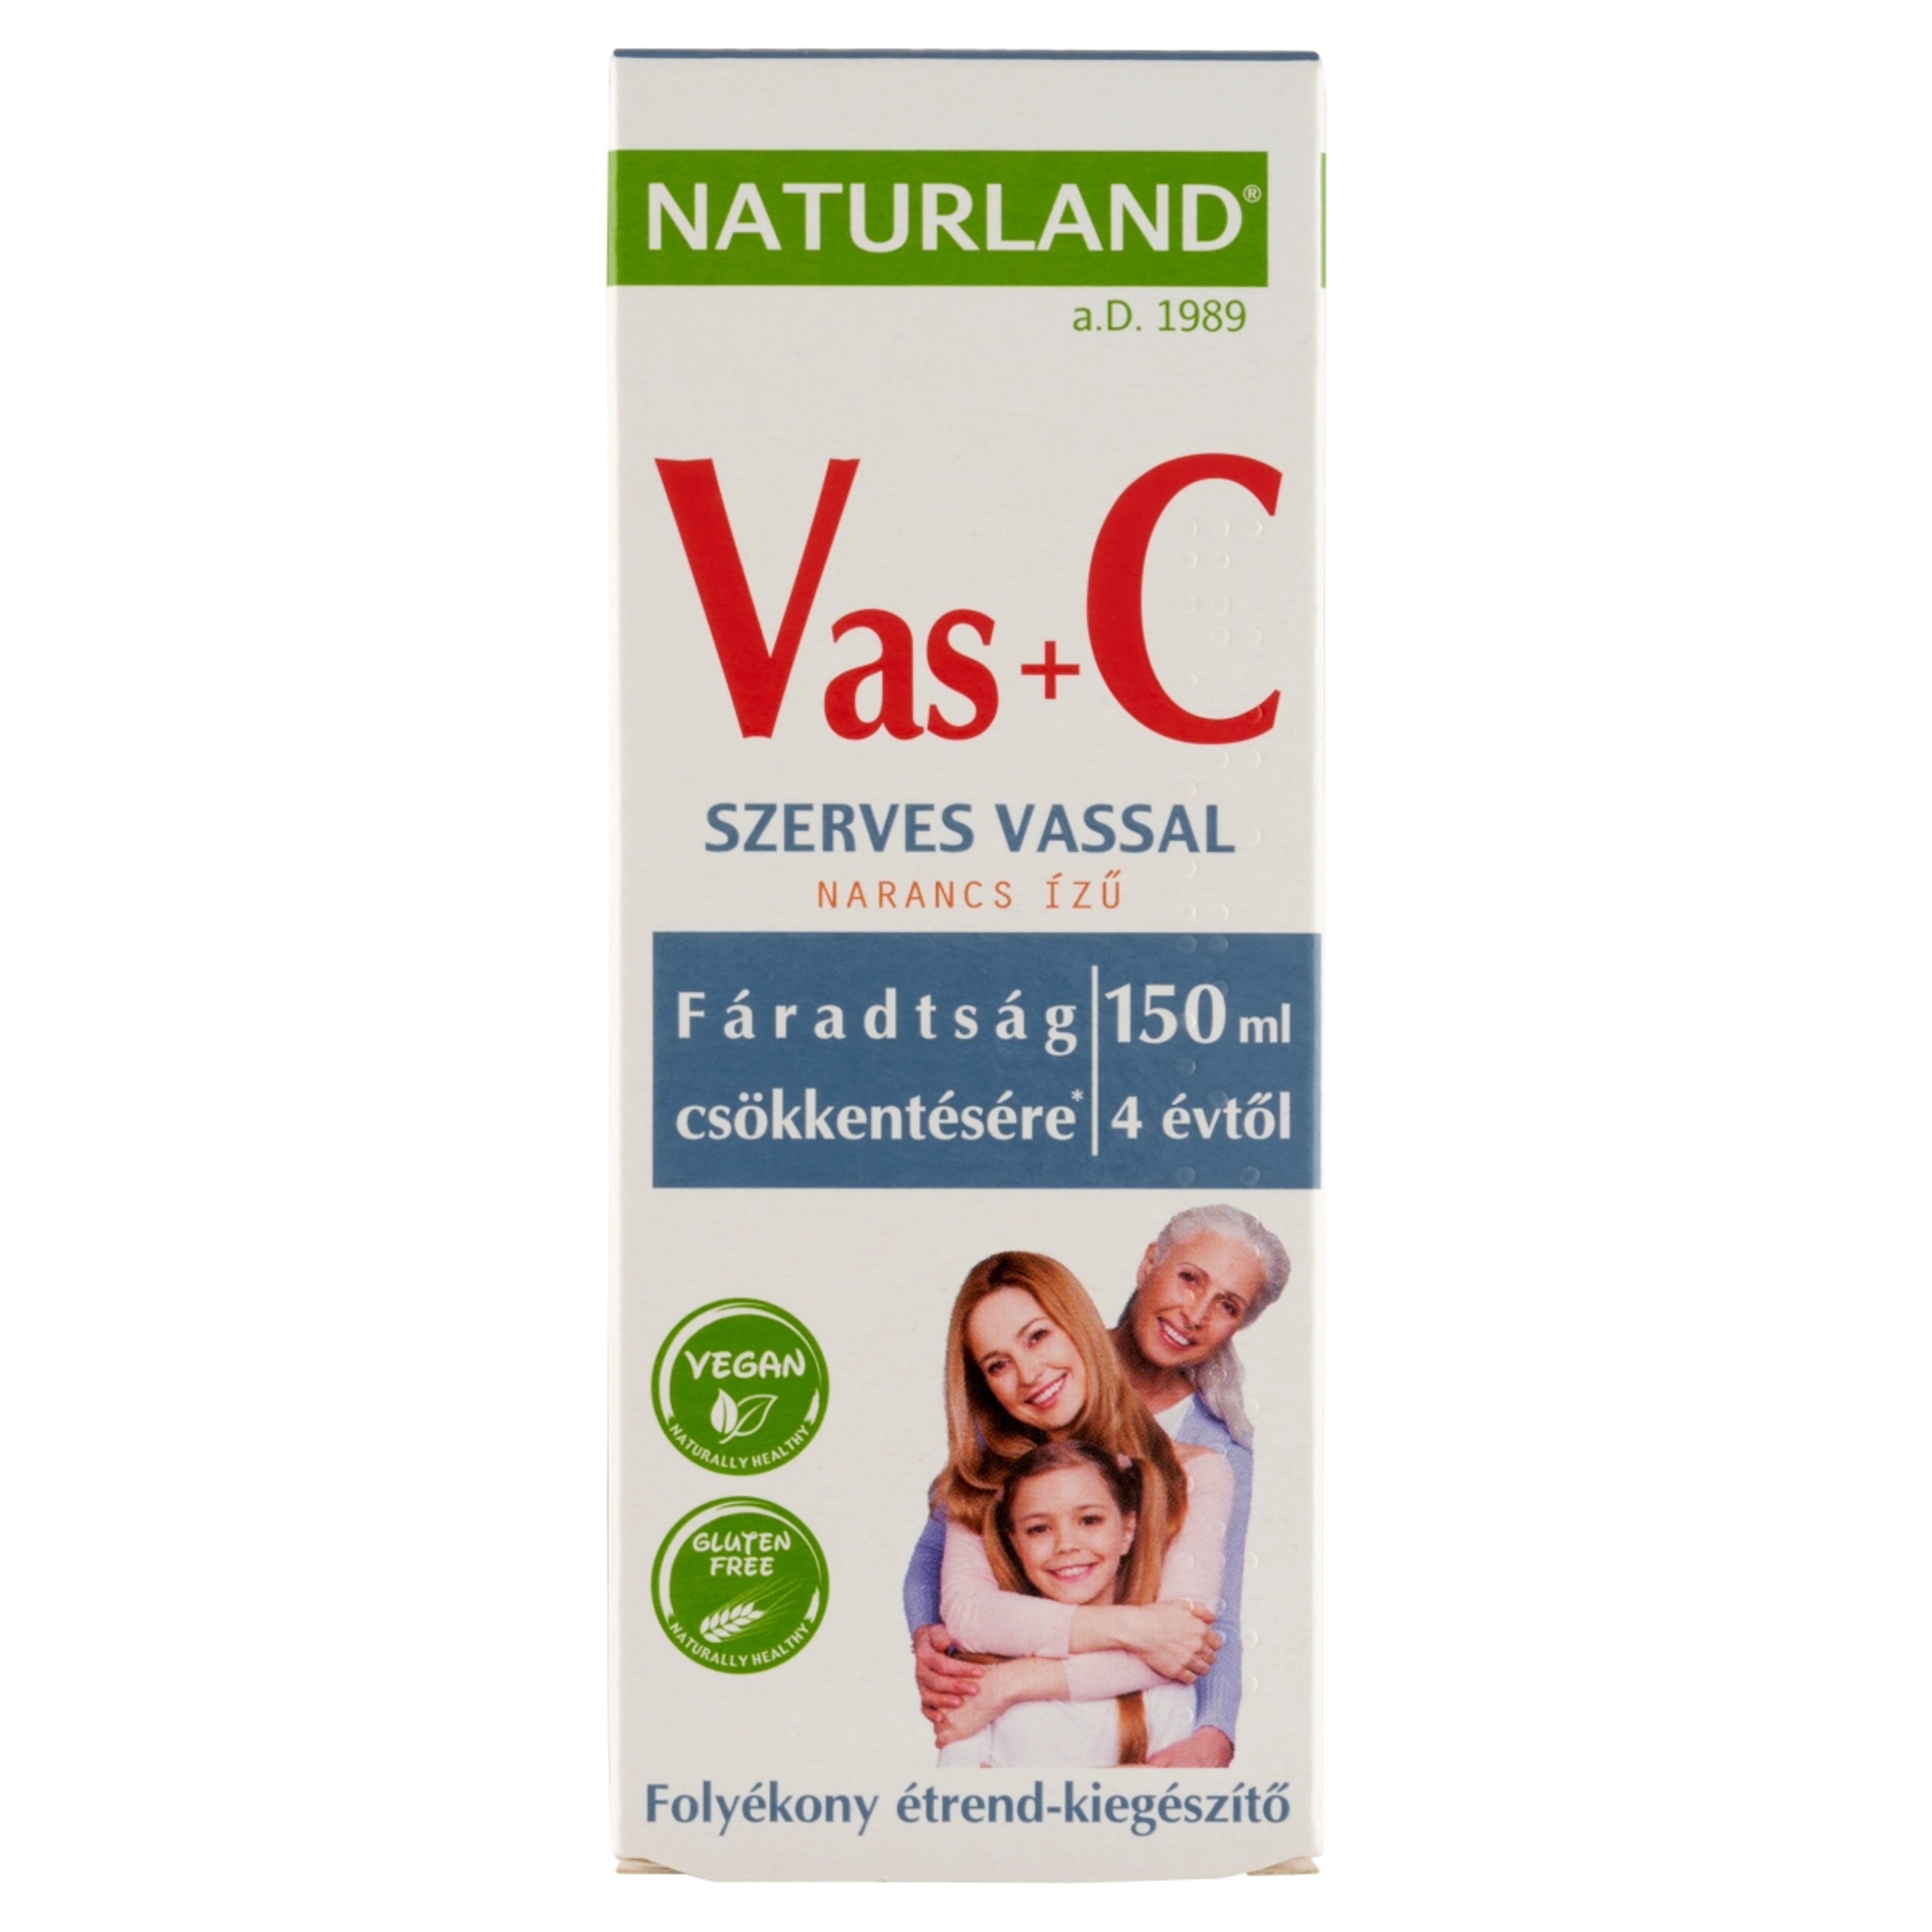 Naturland Vas+C folyékony étrend-kiegészítő készítmény narancs ízű  - 150 ml